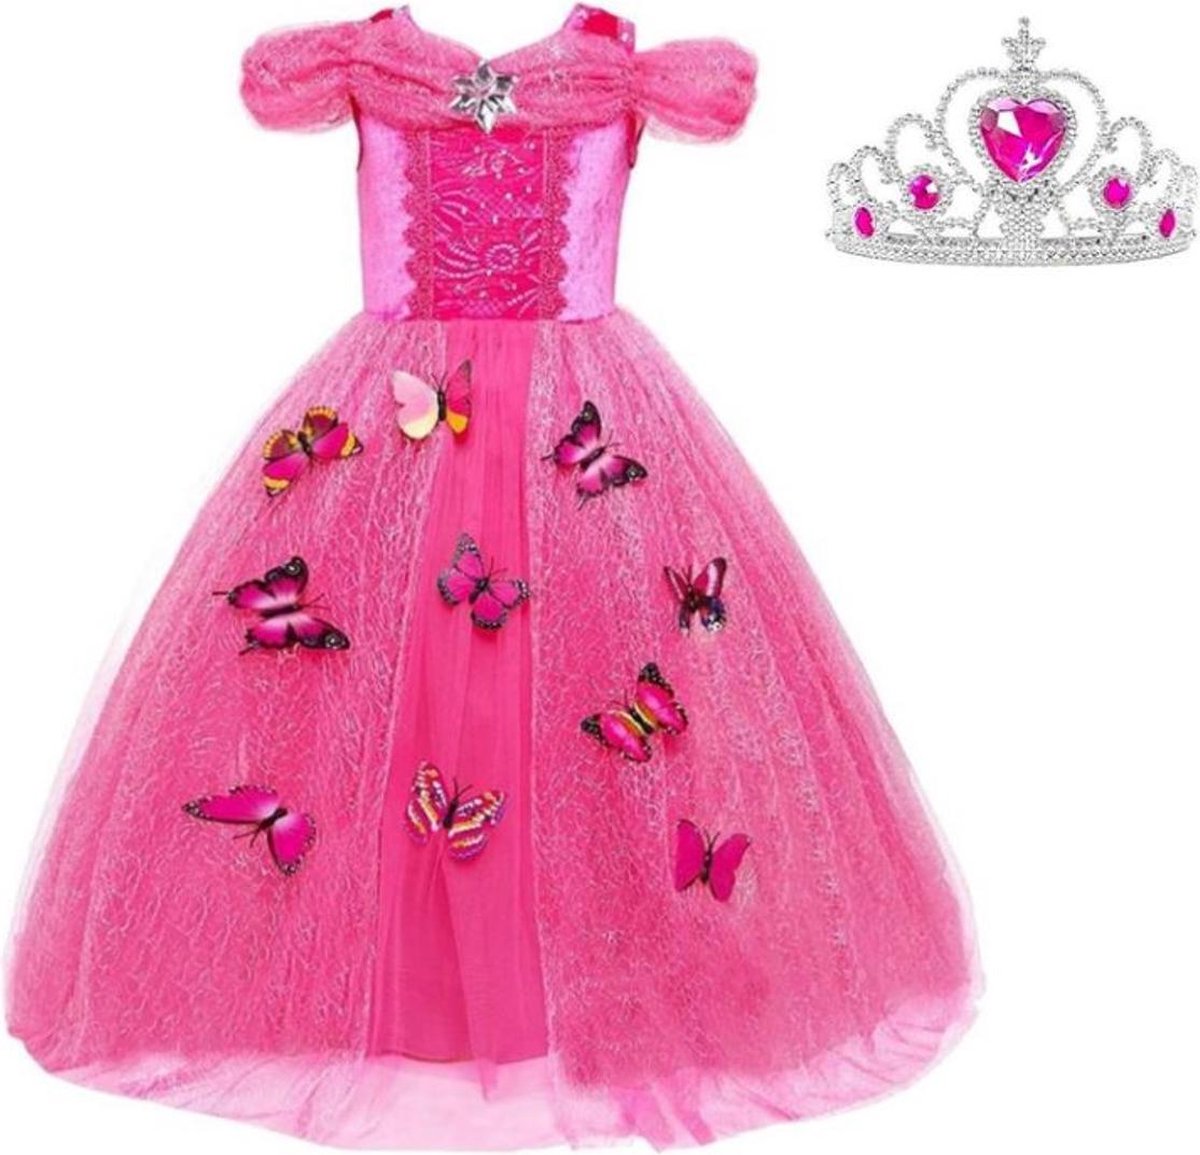 Doornroosje jurk Prinsessen jurk verkleedjurk 104-110 (110) fel roze Luxe met vlinders korte mouw + kroon verkleedkleding - La Señorita